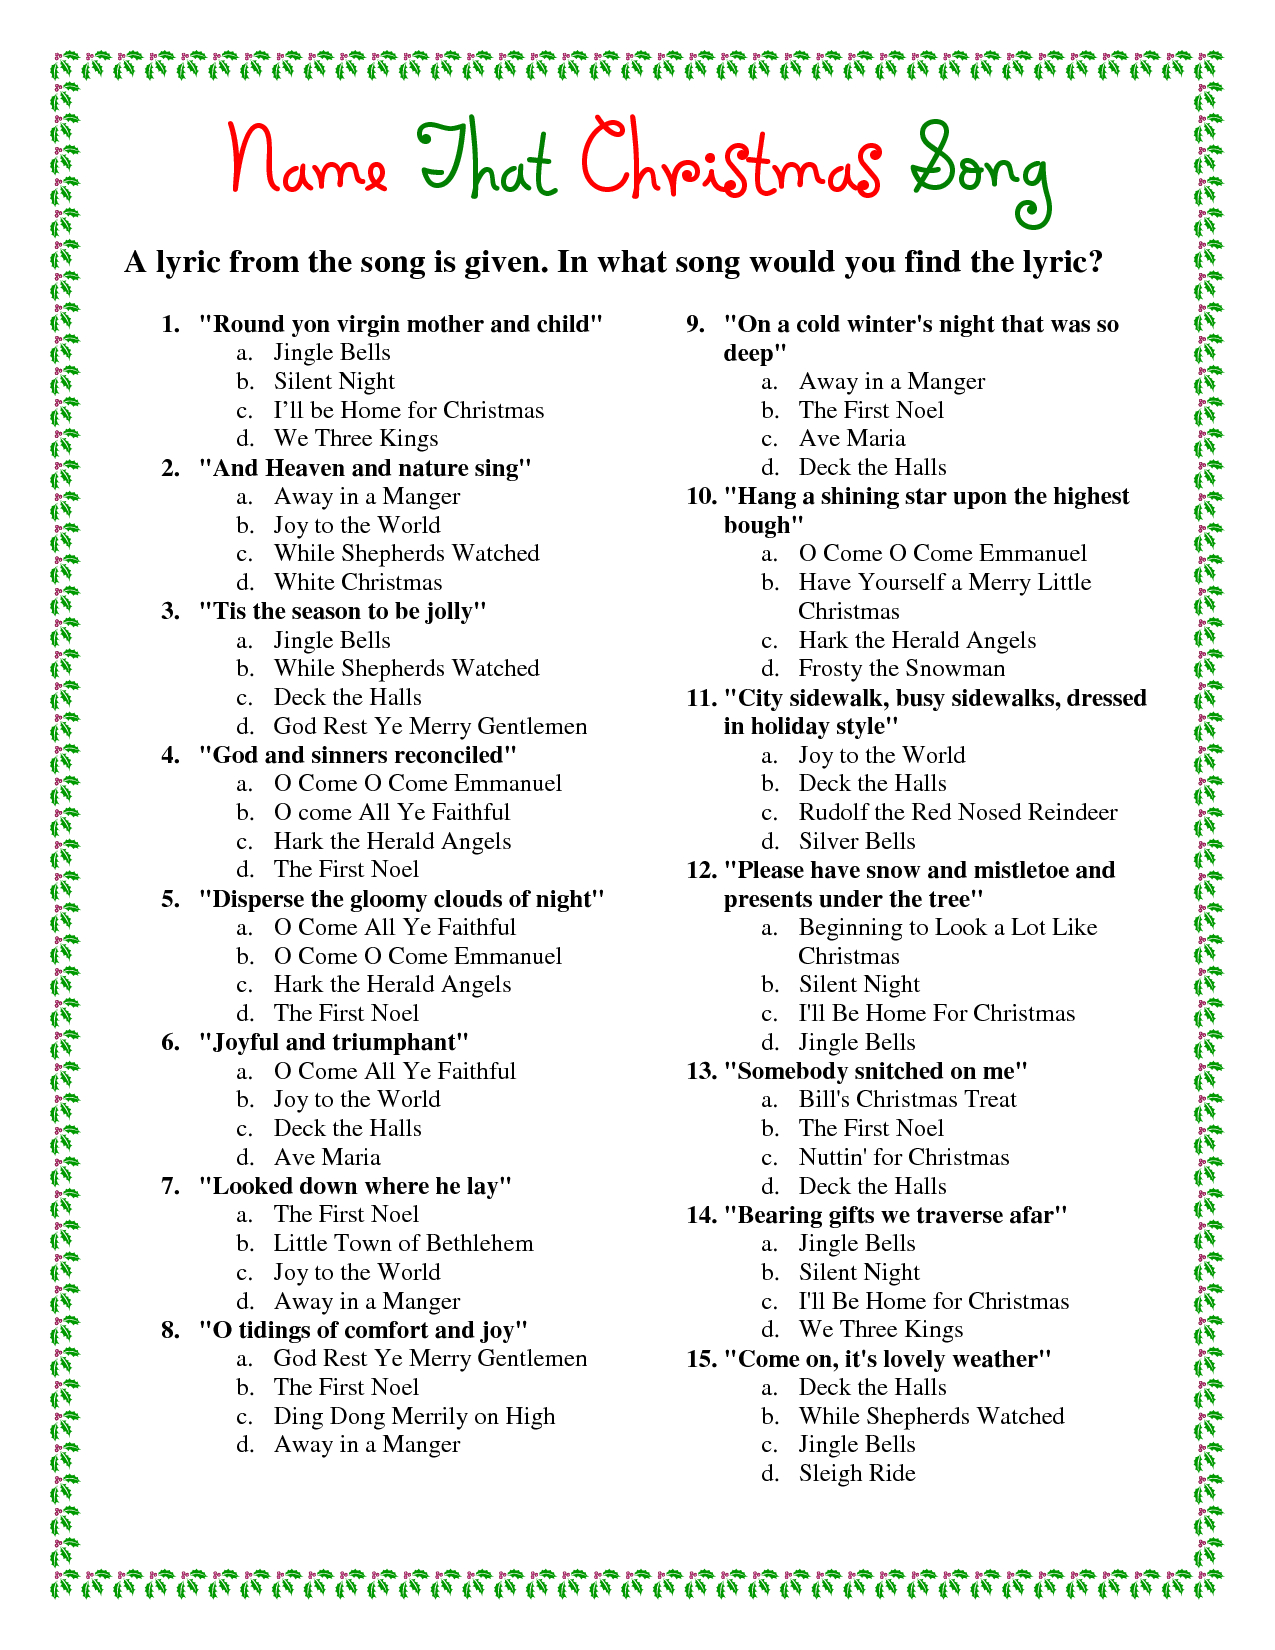 Printable Christmas Song Trivia | Christmas | Christmas Trivia - Free Printable Trivia Questions And Answers